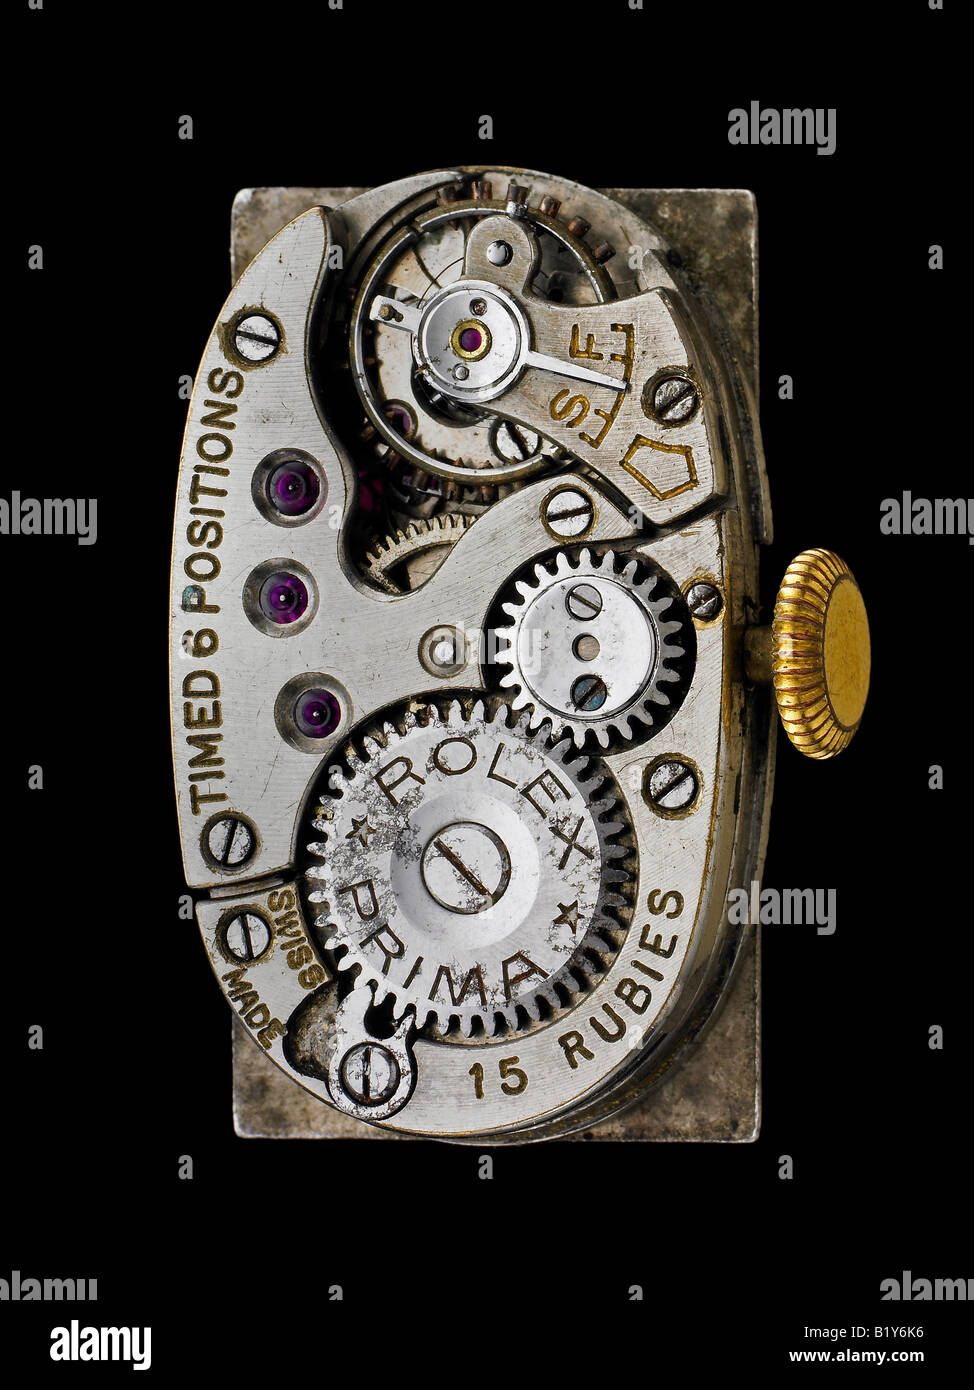 Vintage Rolex Uhr Bewegung Mechanismus Zeitmesser Stockfotografie - Alamy